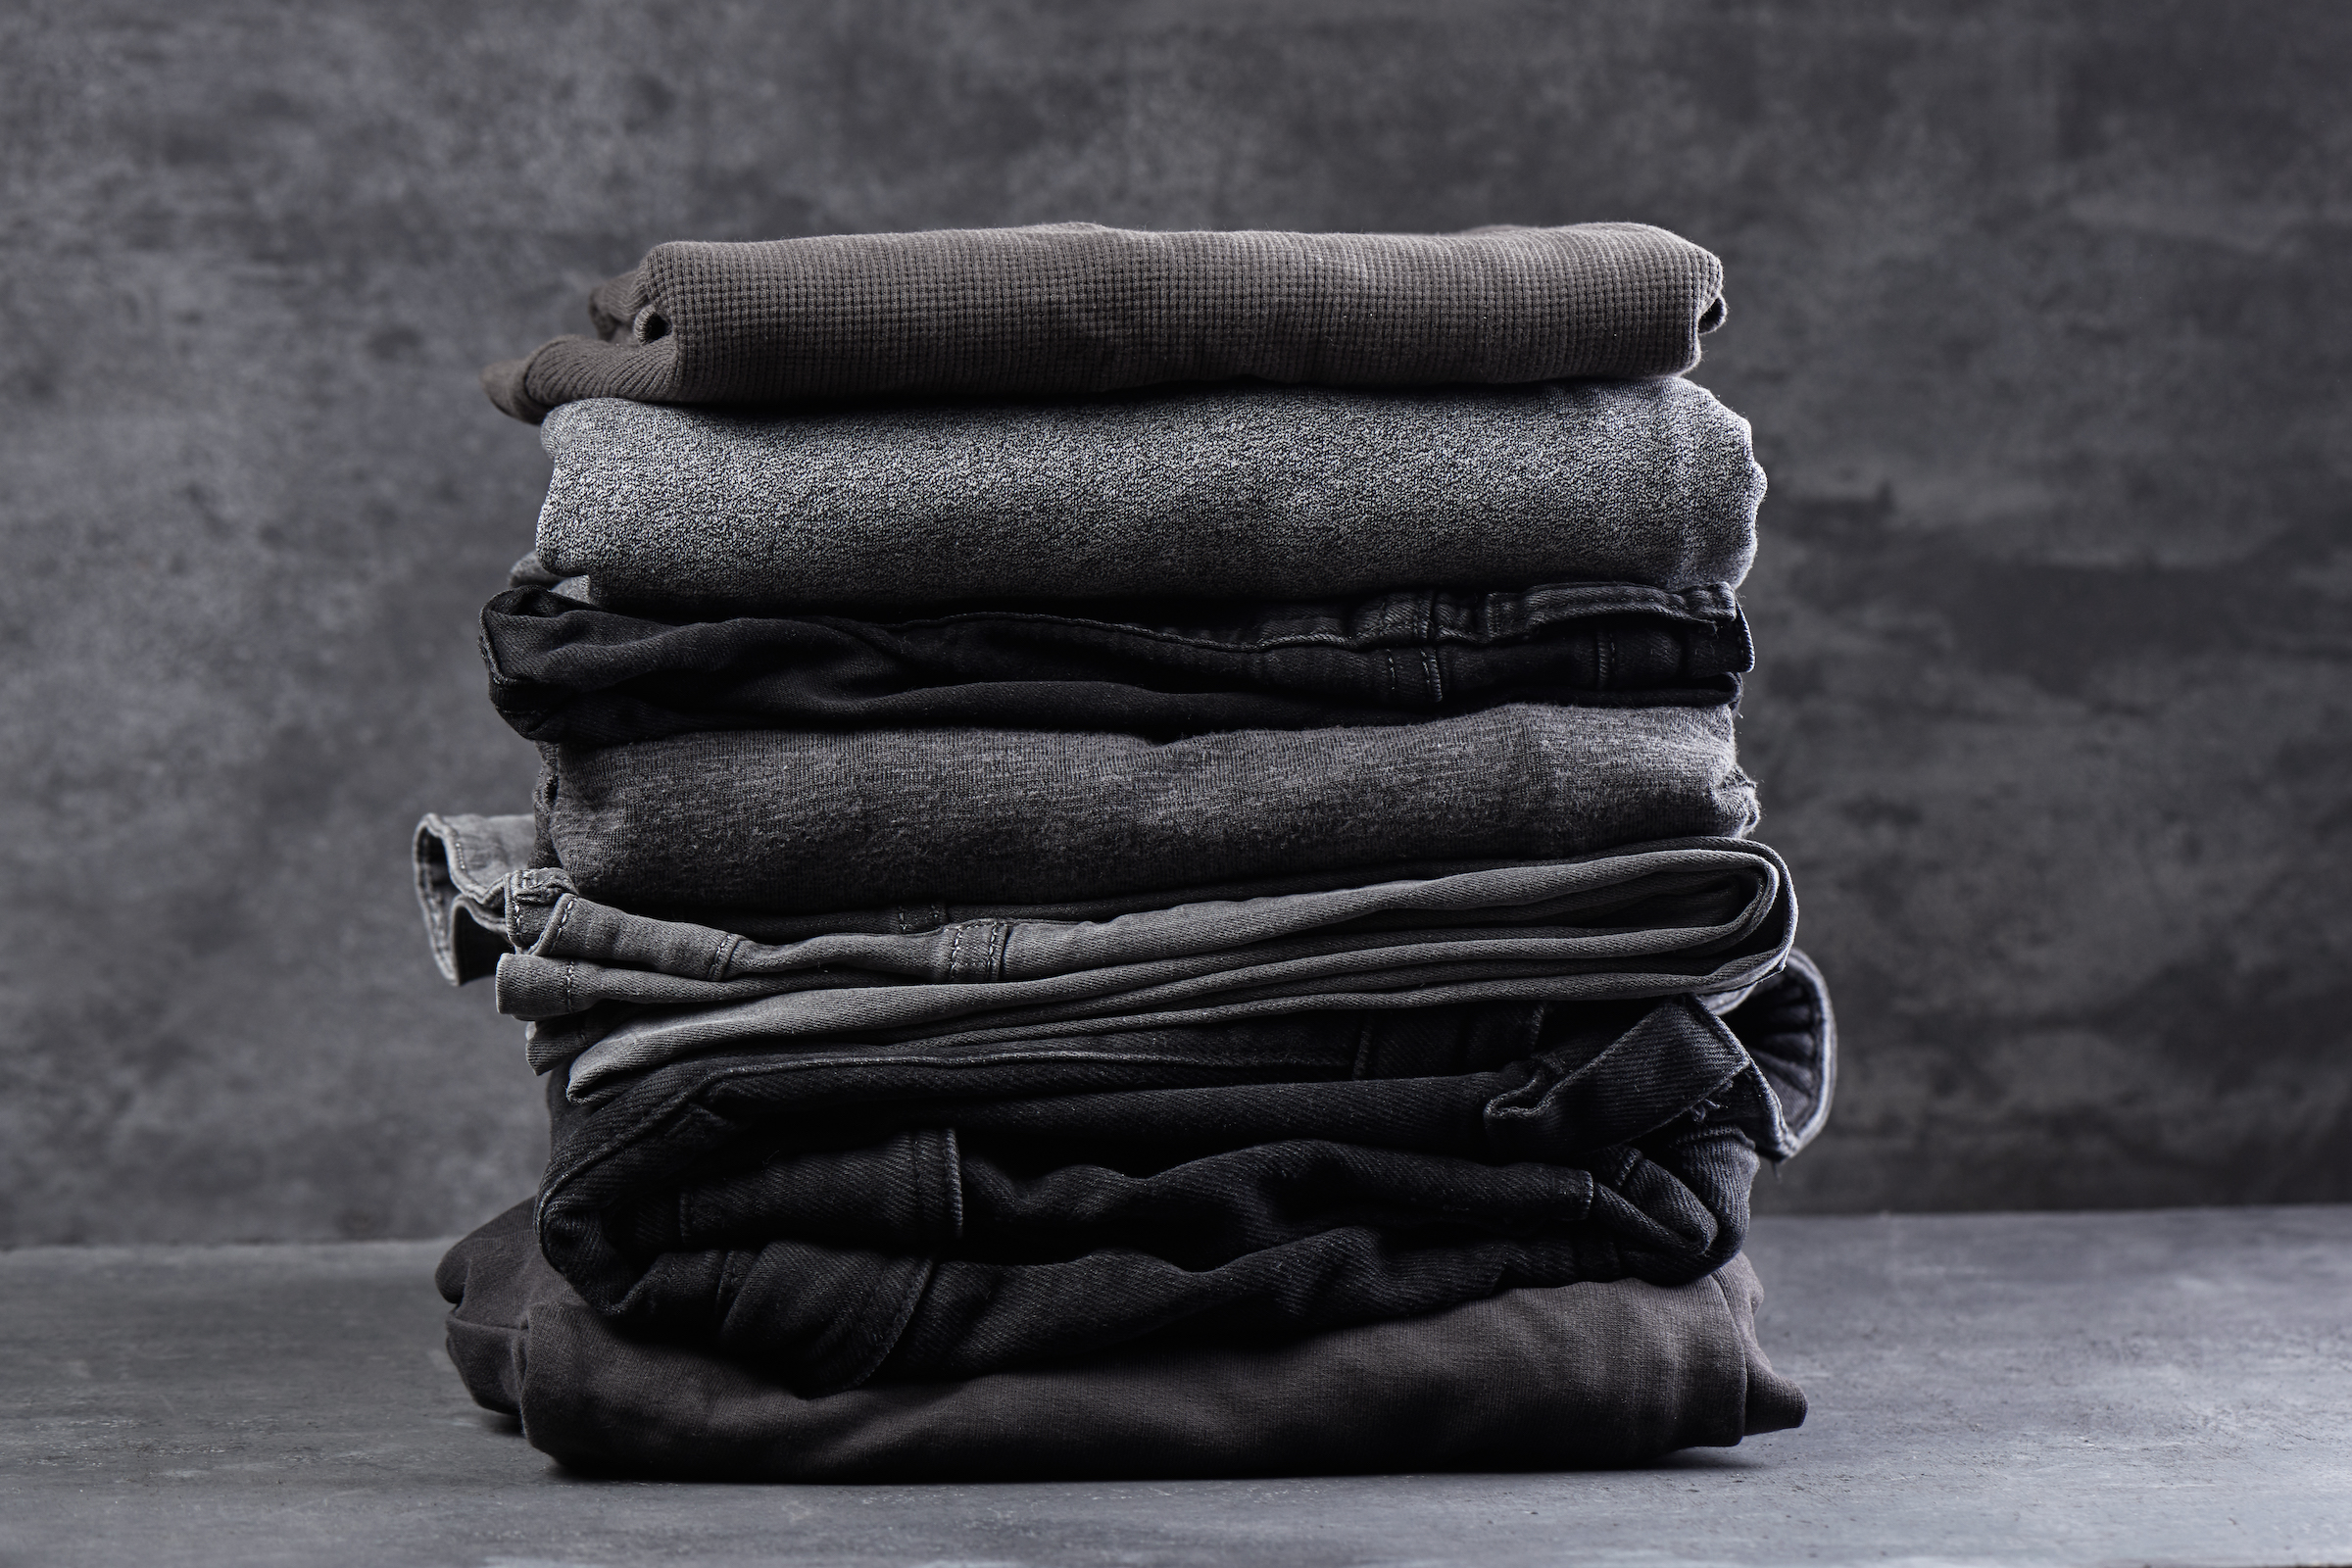 Cómo lavar la ropa negra u oscura: trucos para el y que no se destiña | Computer Hoy